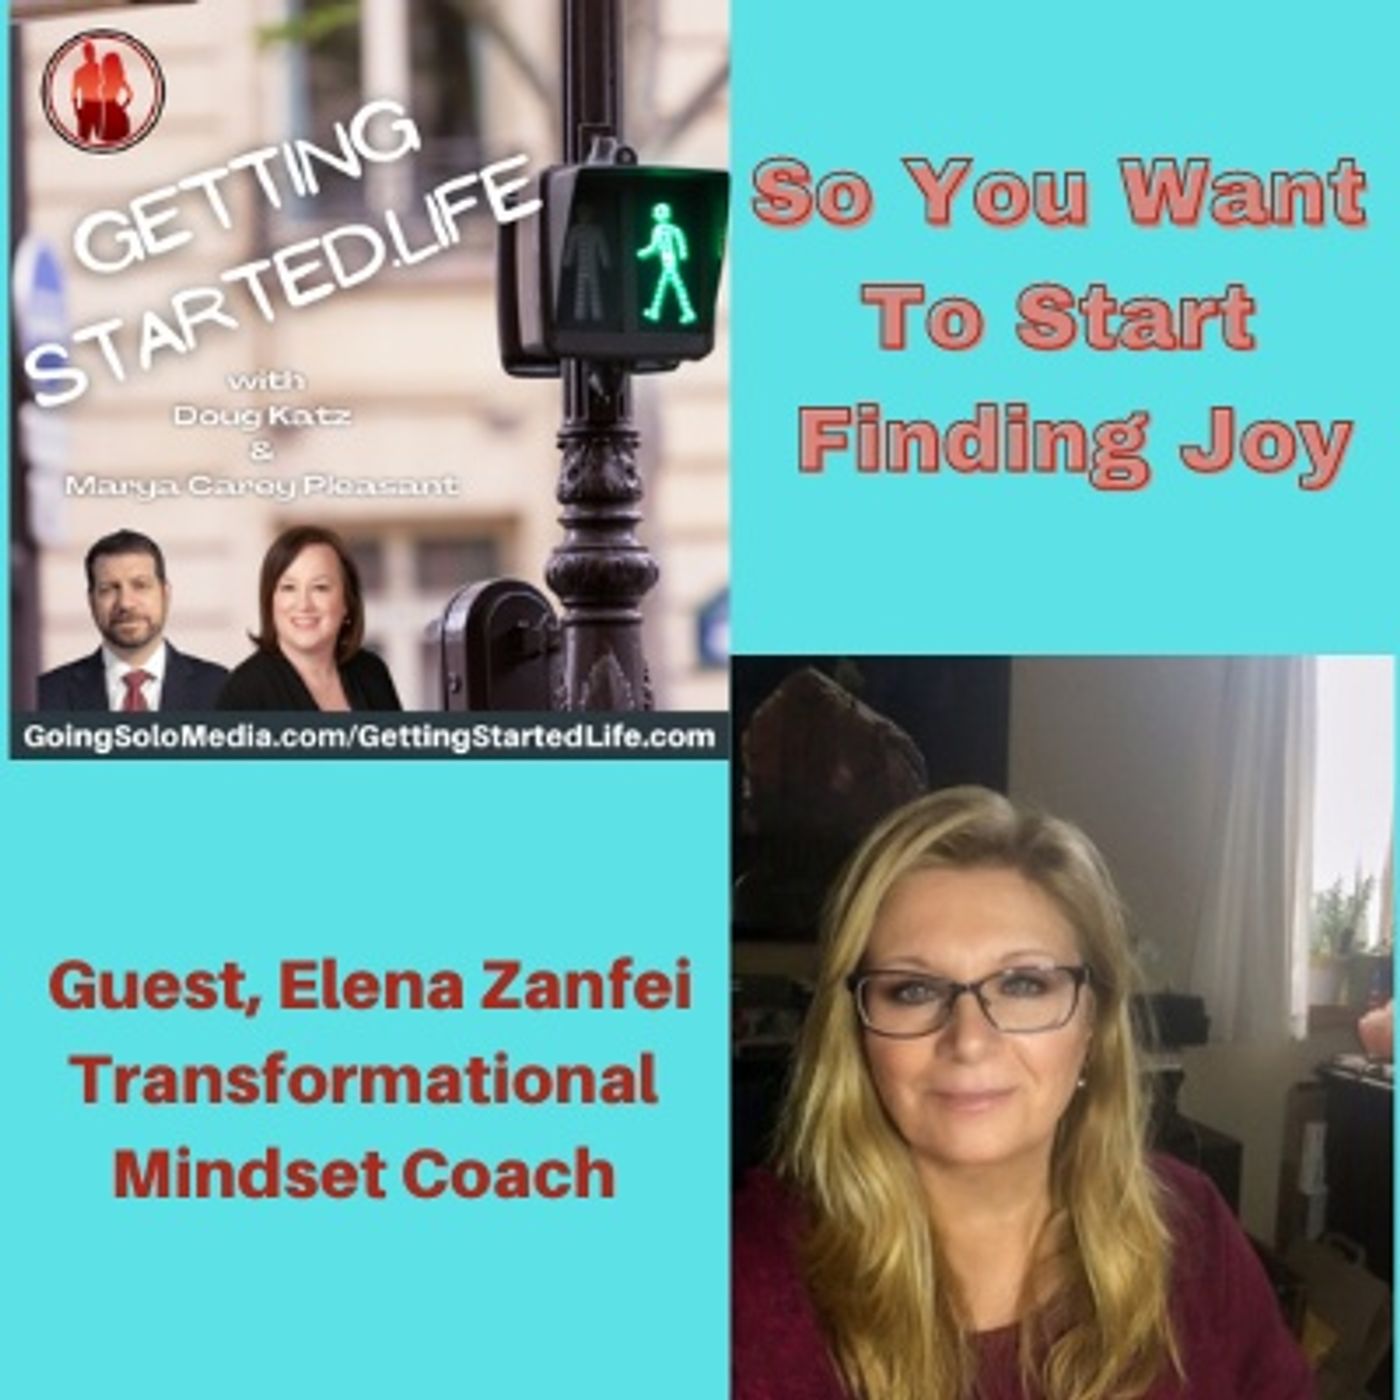 So You Want To Start Finding Joy - Guest, Elena Zanfei